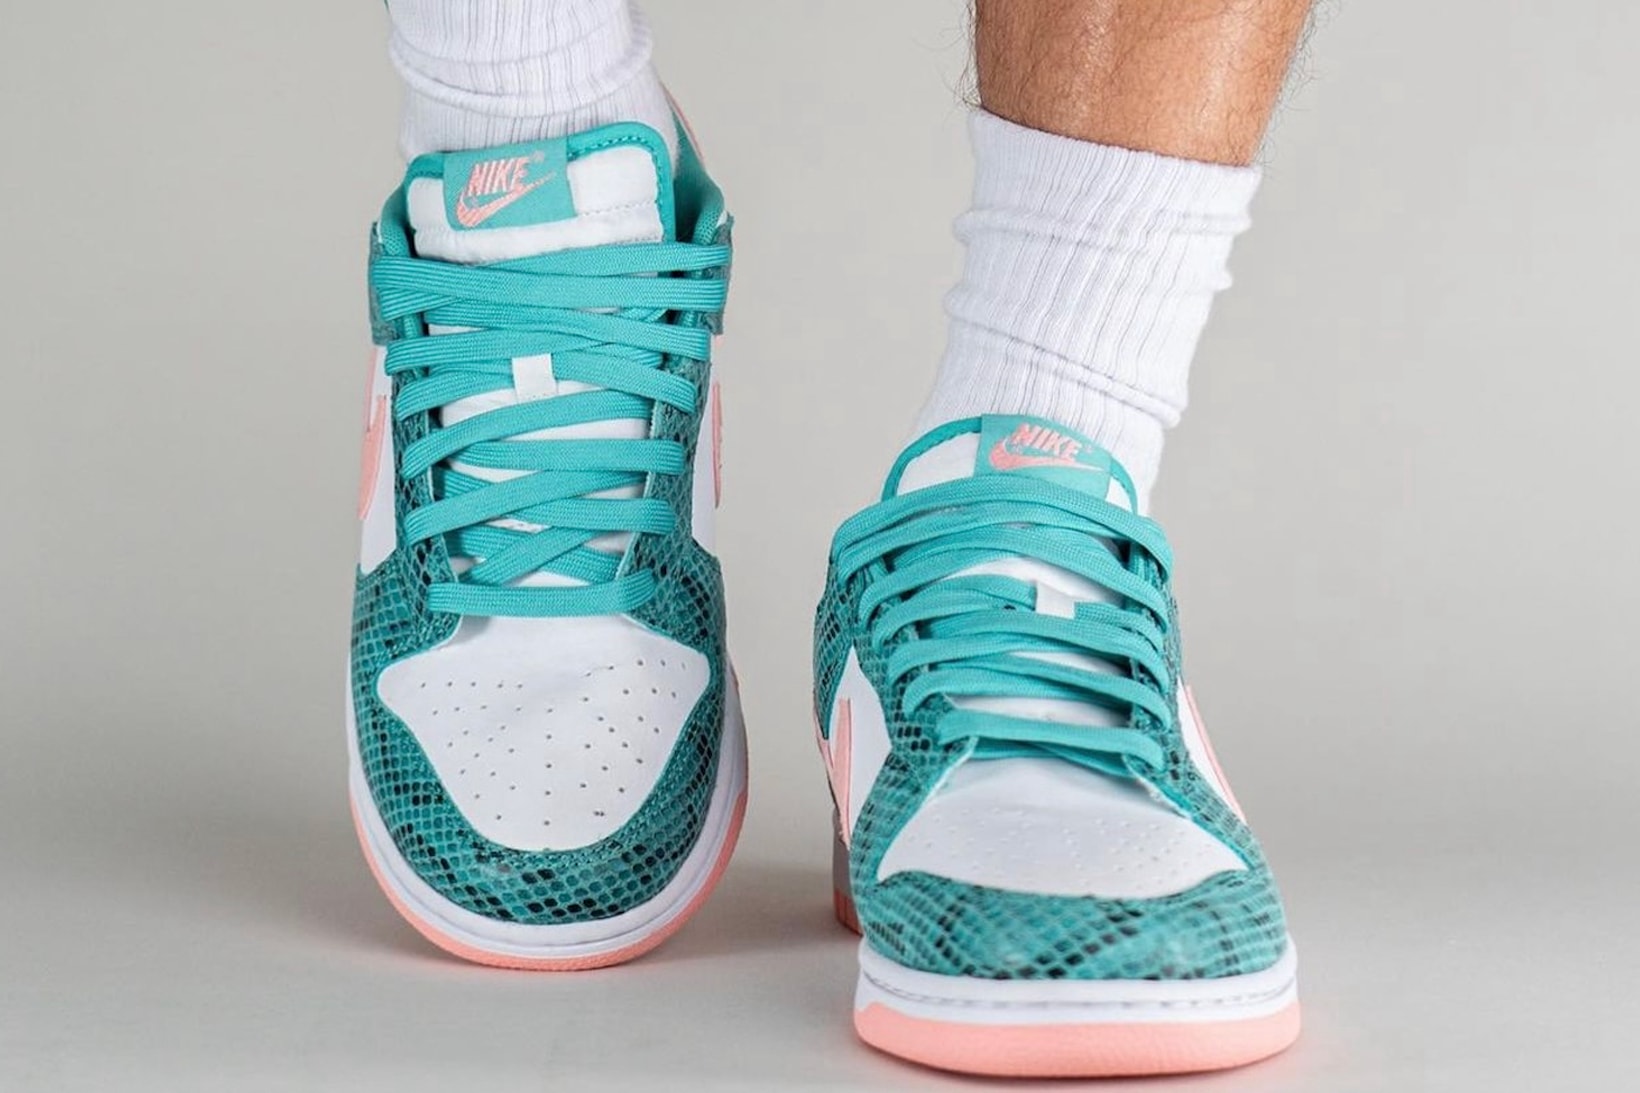 Nike Dunk Low Teal Pink Snakeskin Sneakers Footwear Kicks Shoes